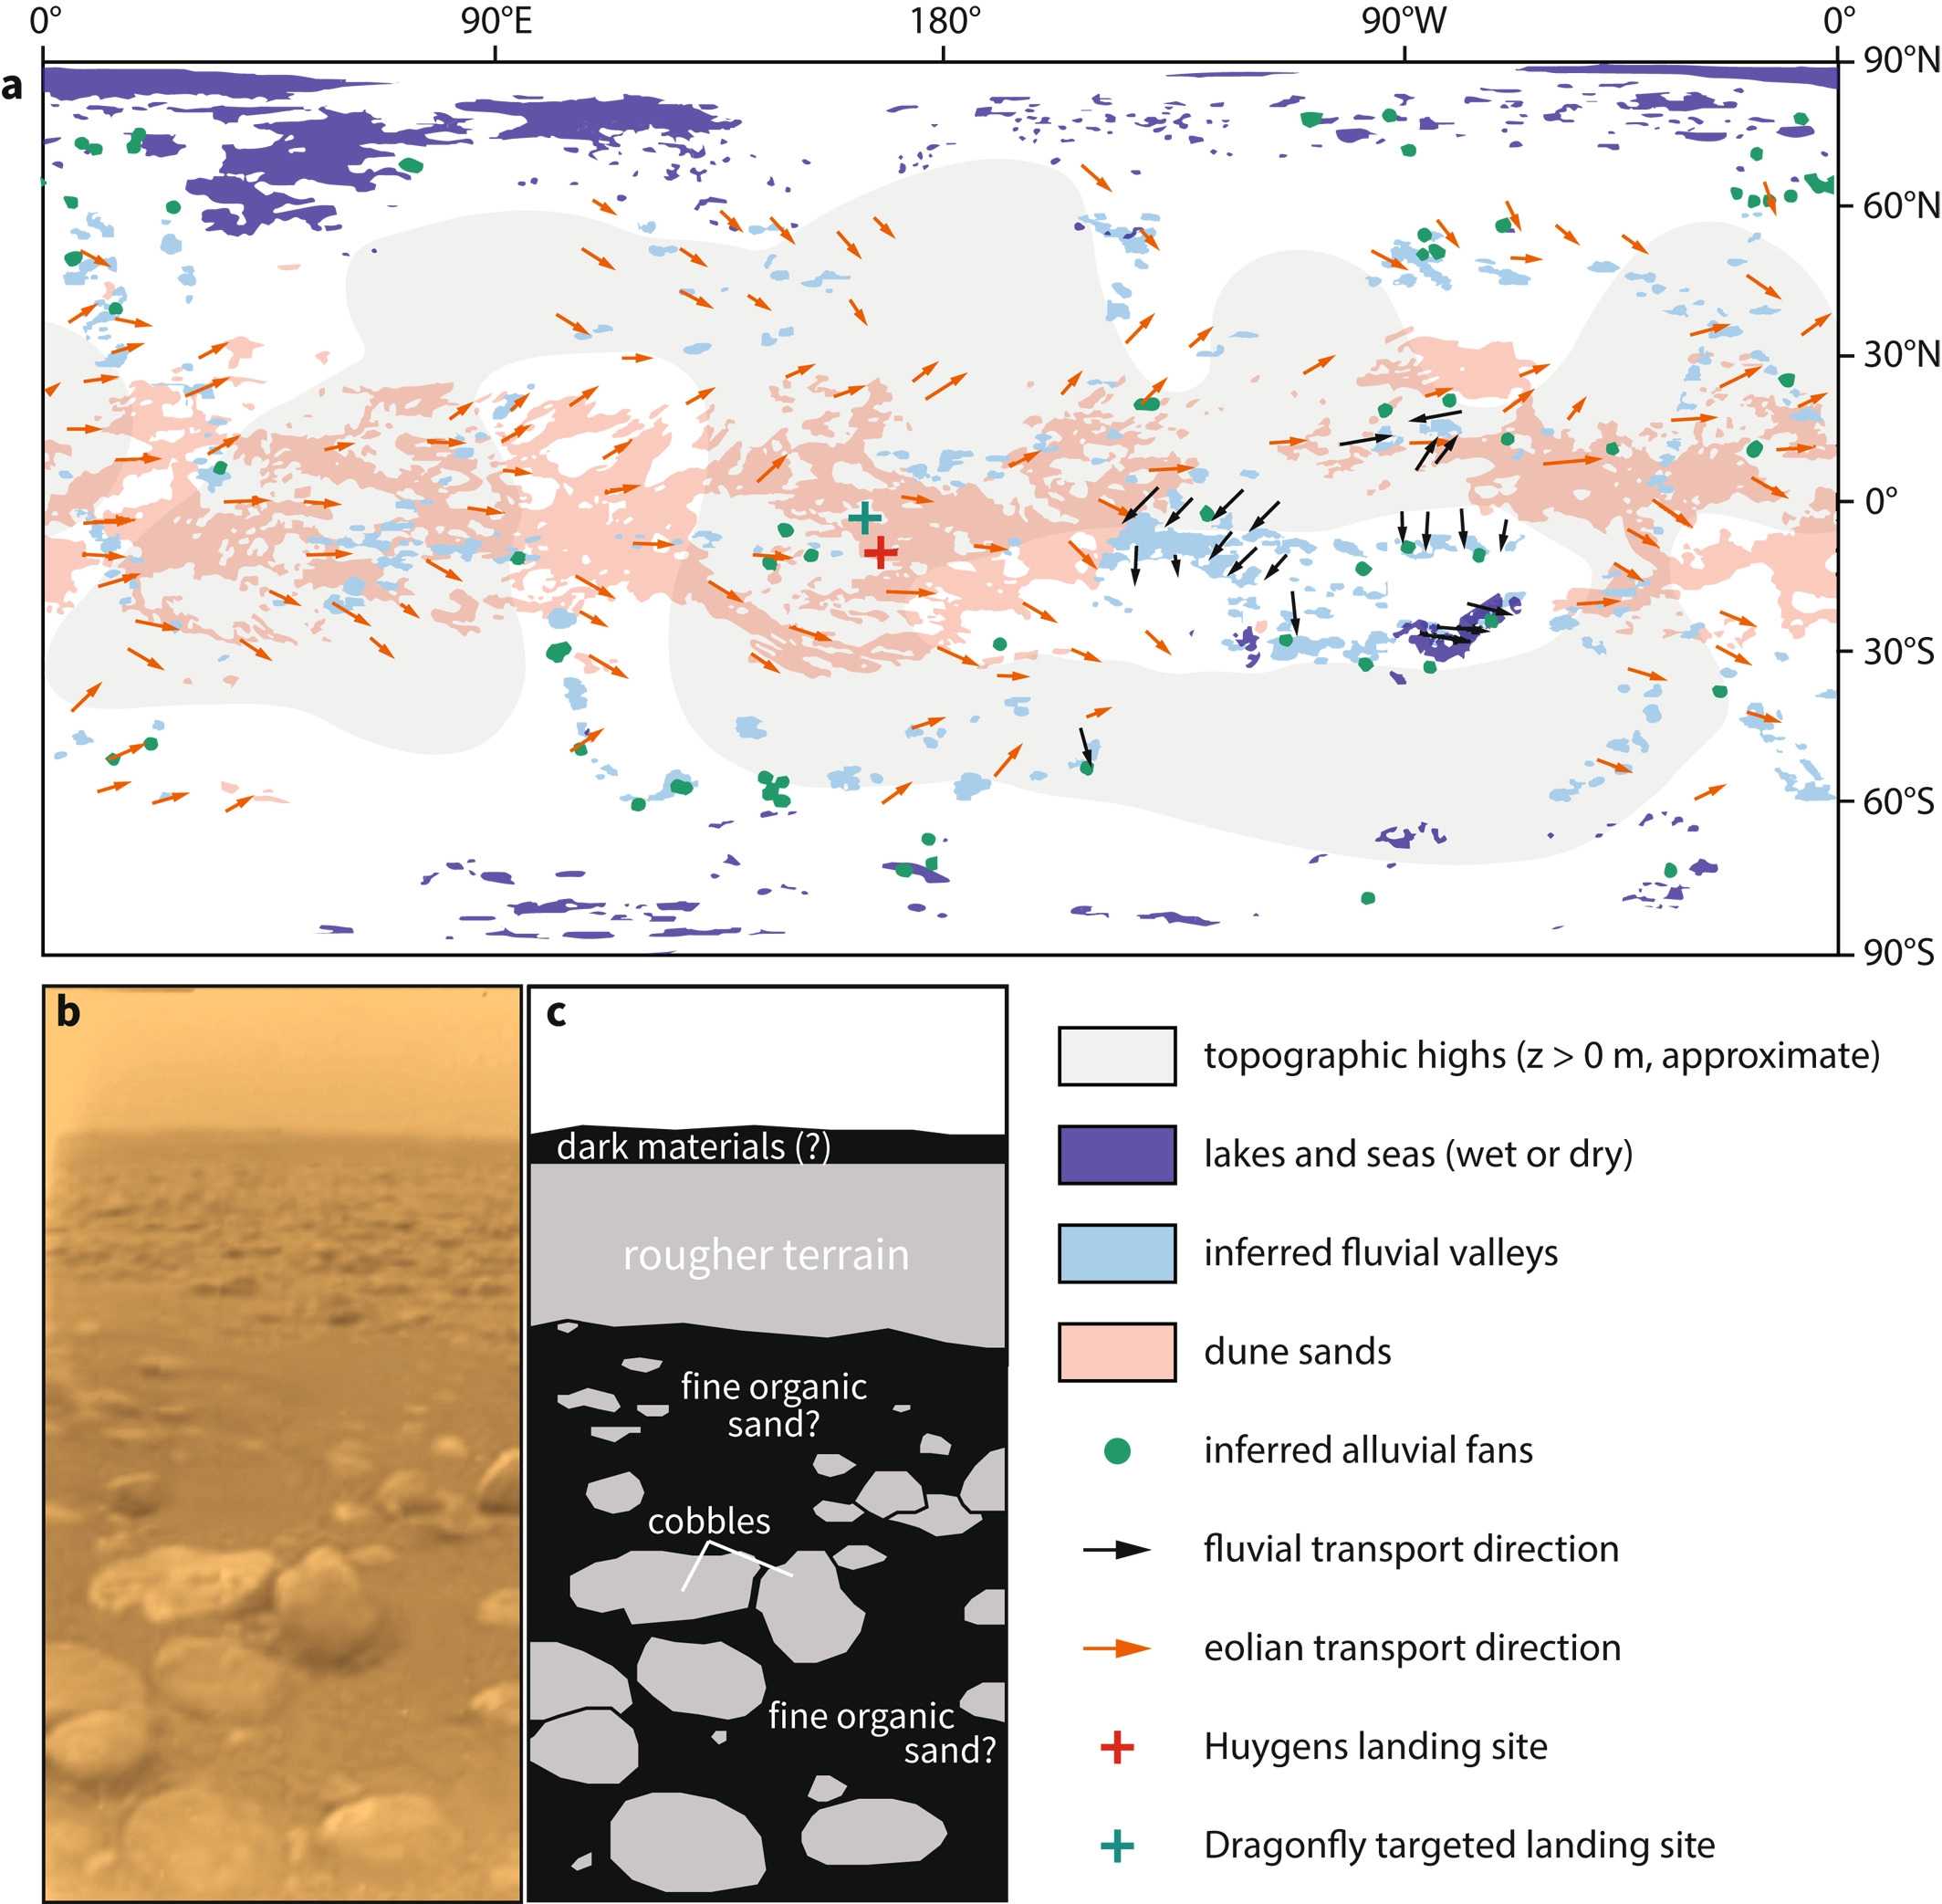 Углеводородный песок и метановые ручьи: ученые объяснили пейзажи Титана